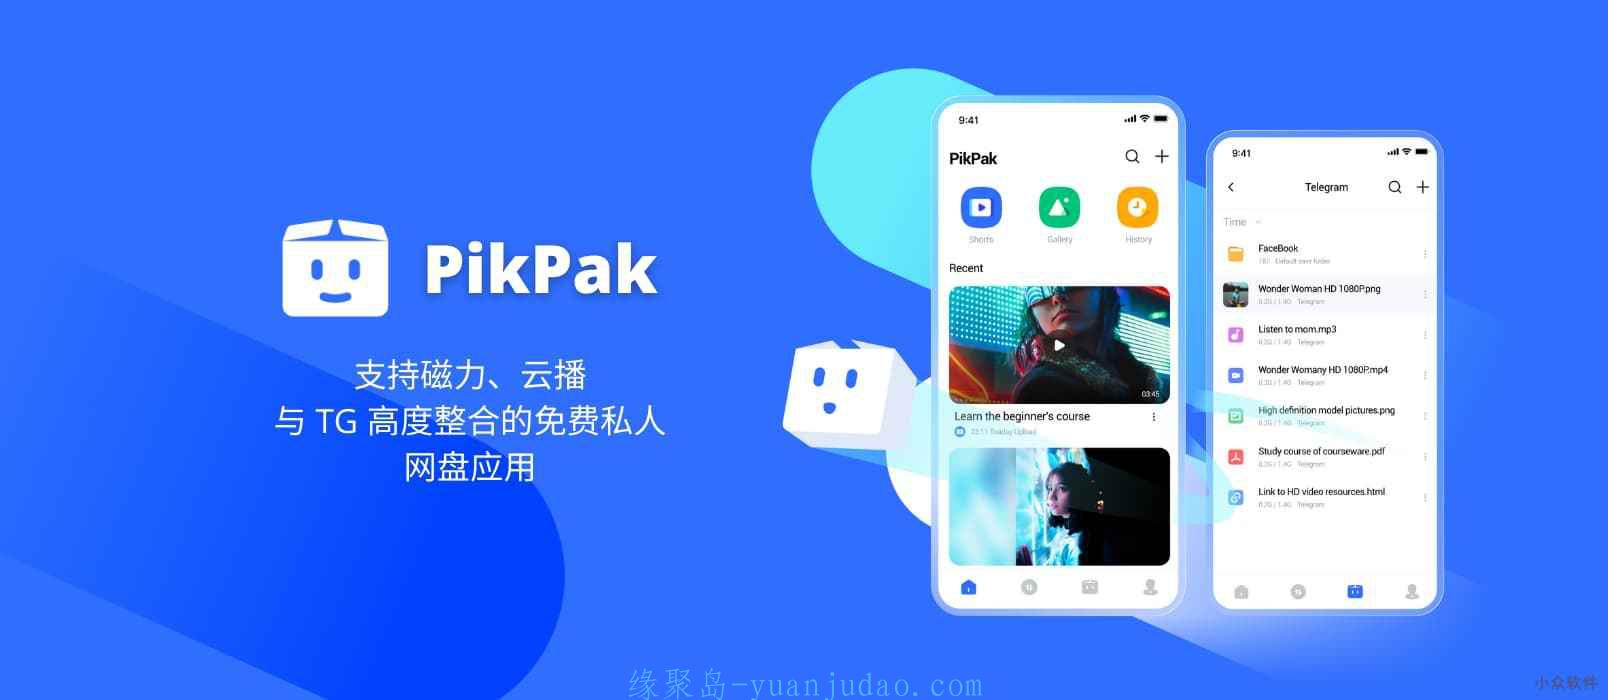 PikPak – 支持磁力、云播，与 TG 高度整合的免费私人网盘应用